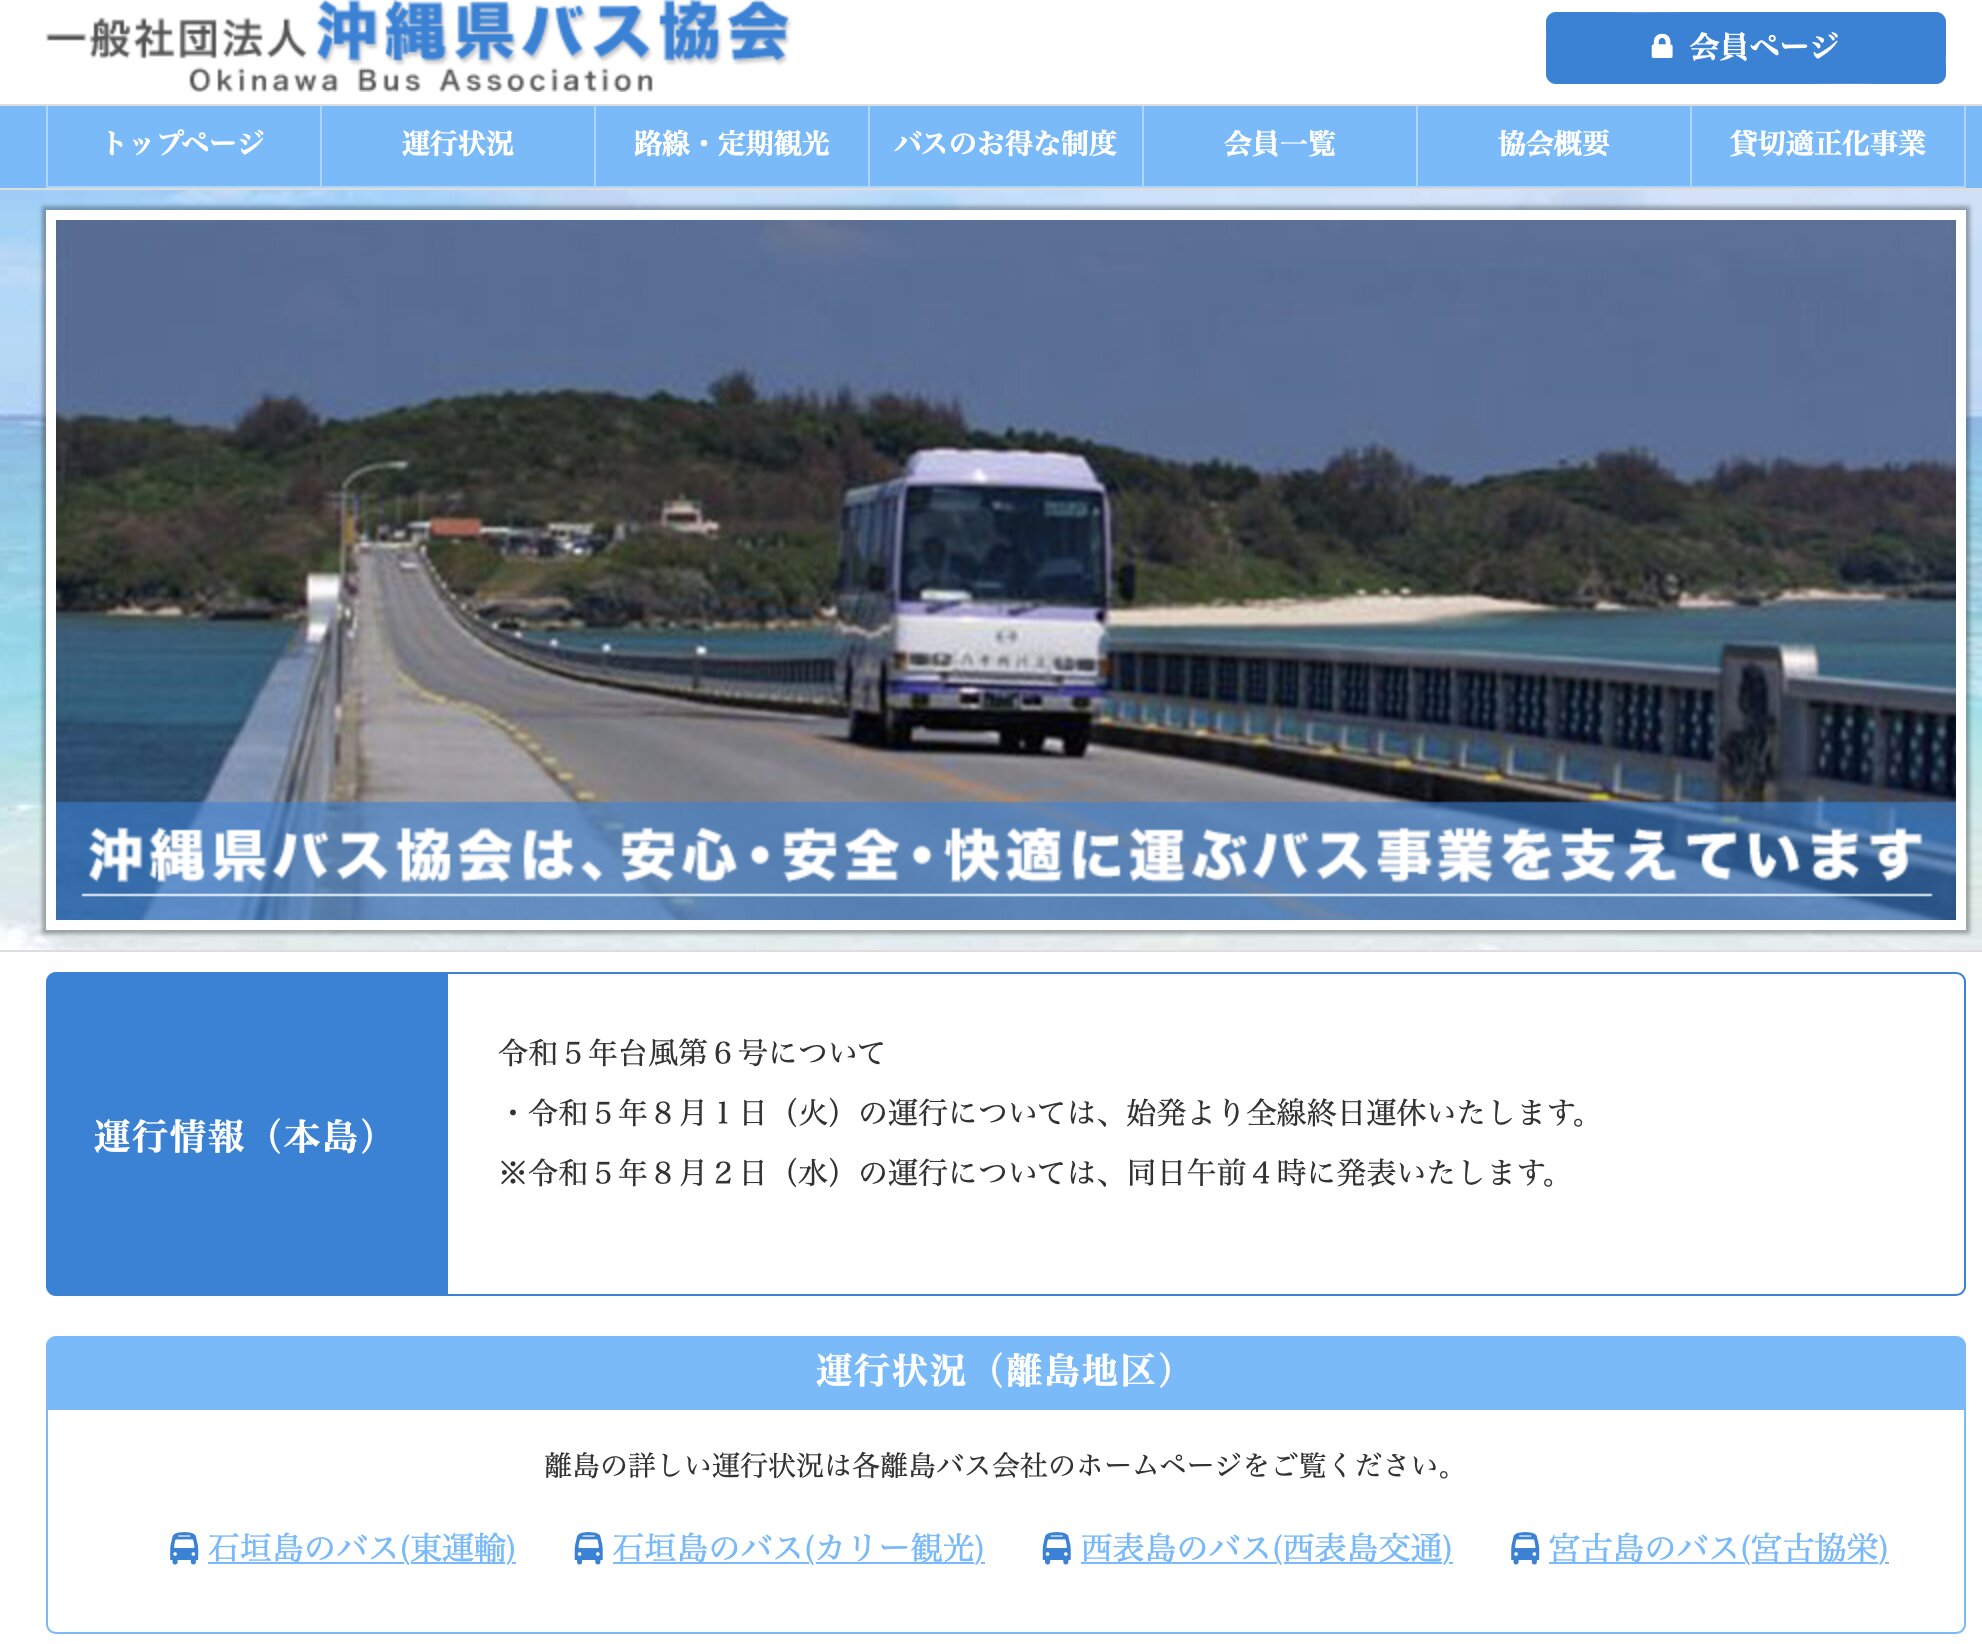 2023年8月1日　6:45時点の情報　沖縄県バス協会公式HPより引用